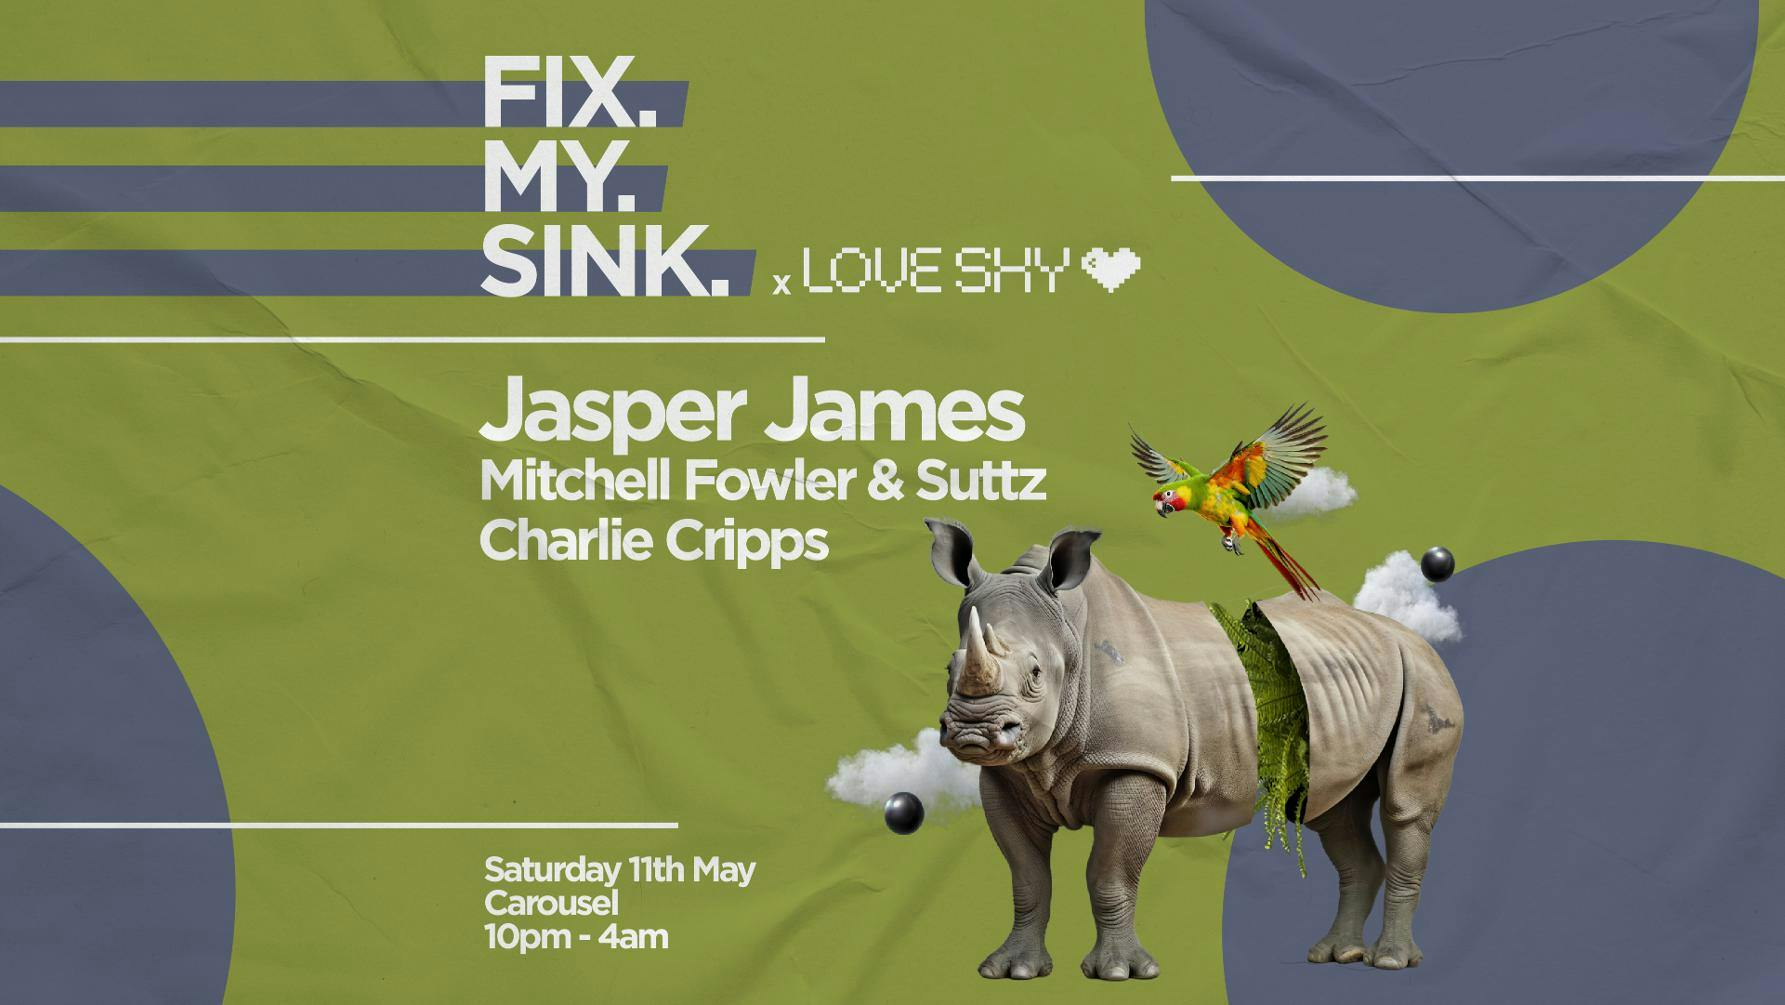 ╬ FIX MY SINK & Love Shy Art Club ╬ Jasper James ╬ Saturday May 11th ╬